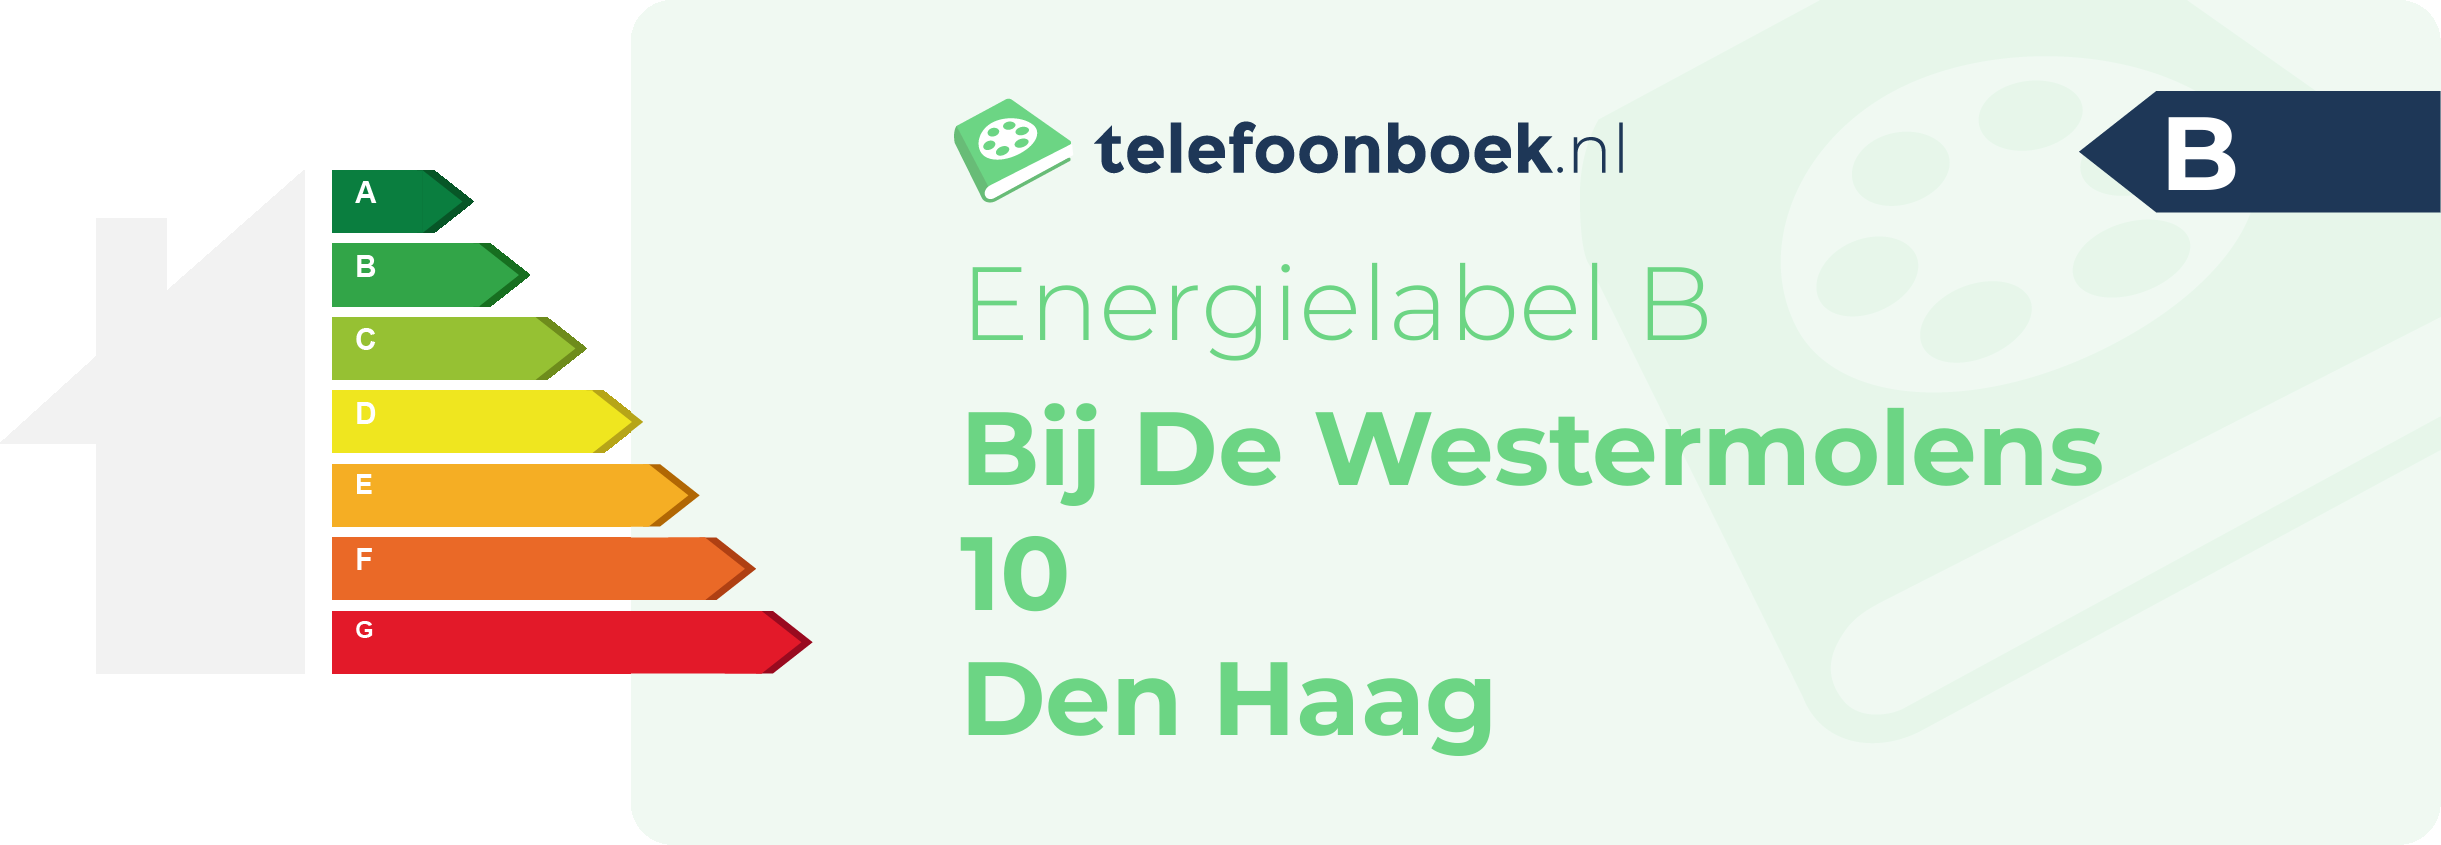 Energielabel Bij De Westermolens 10 Den Haag